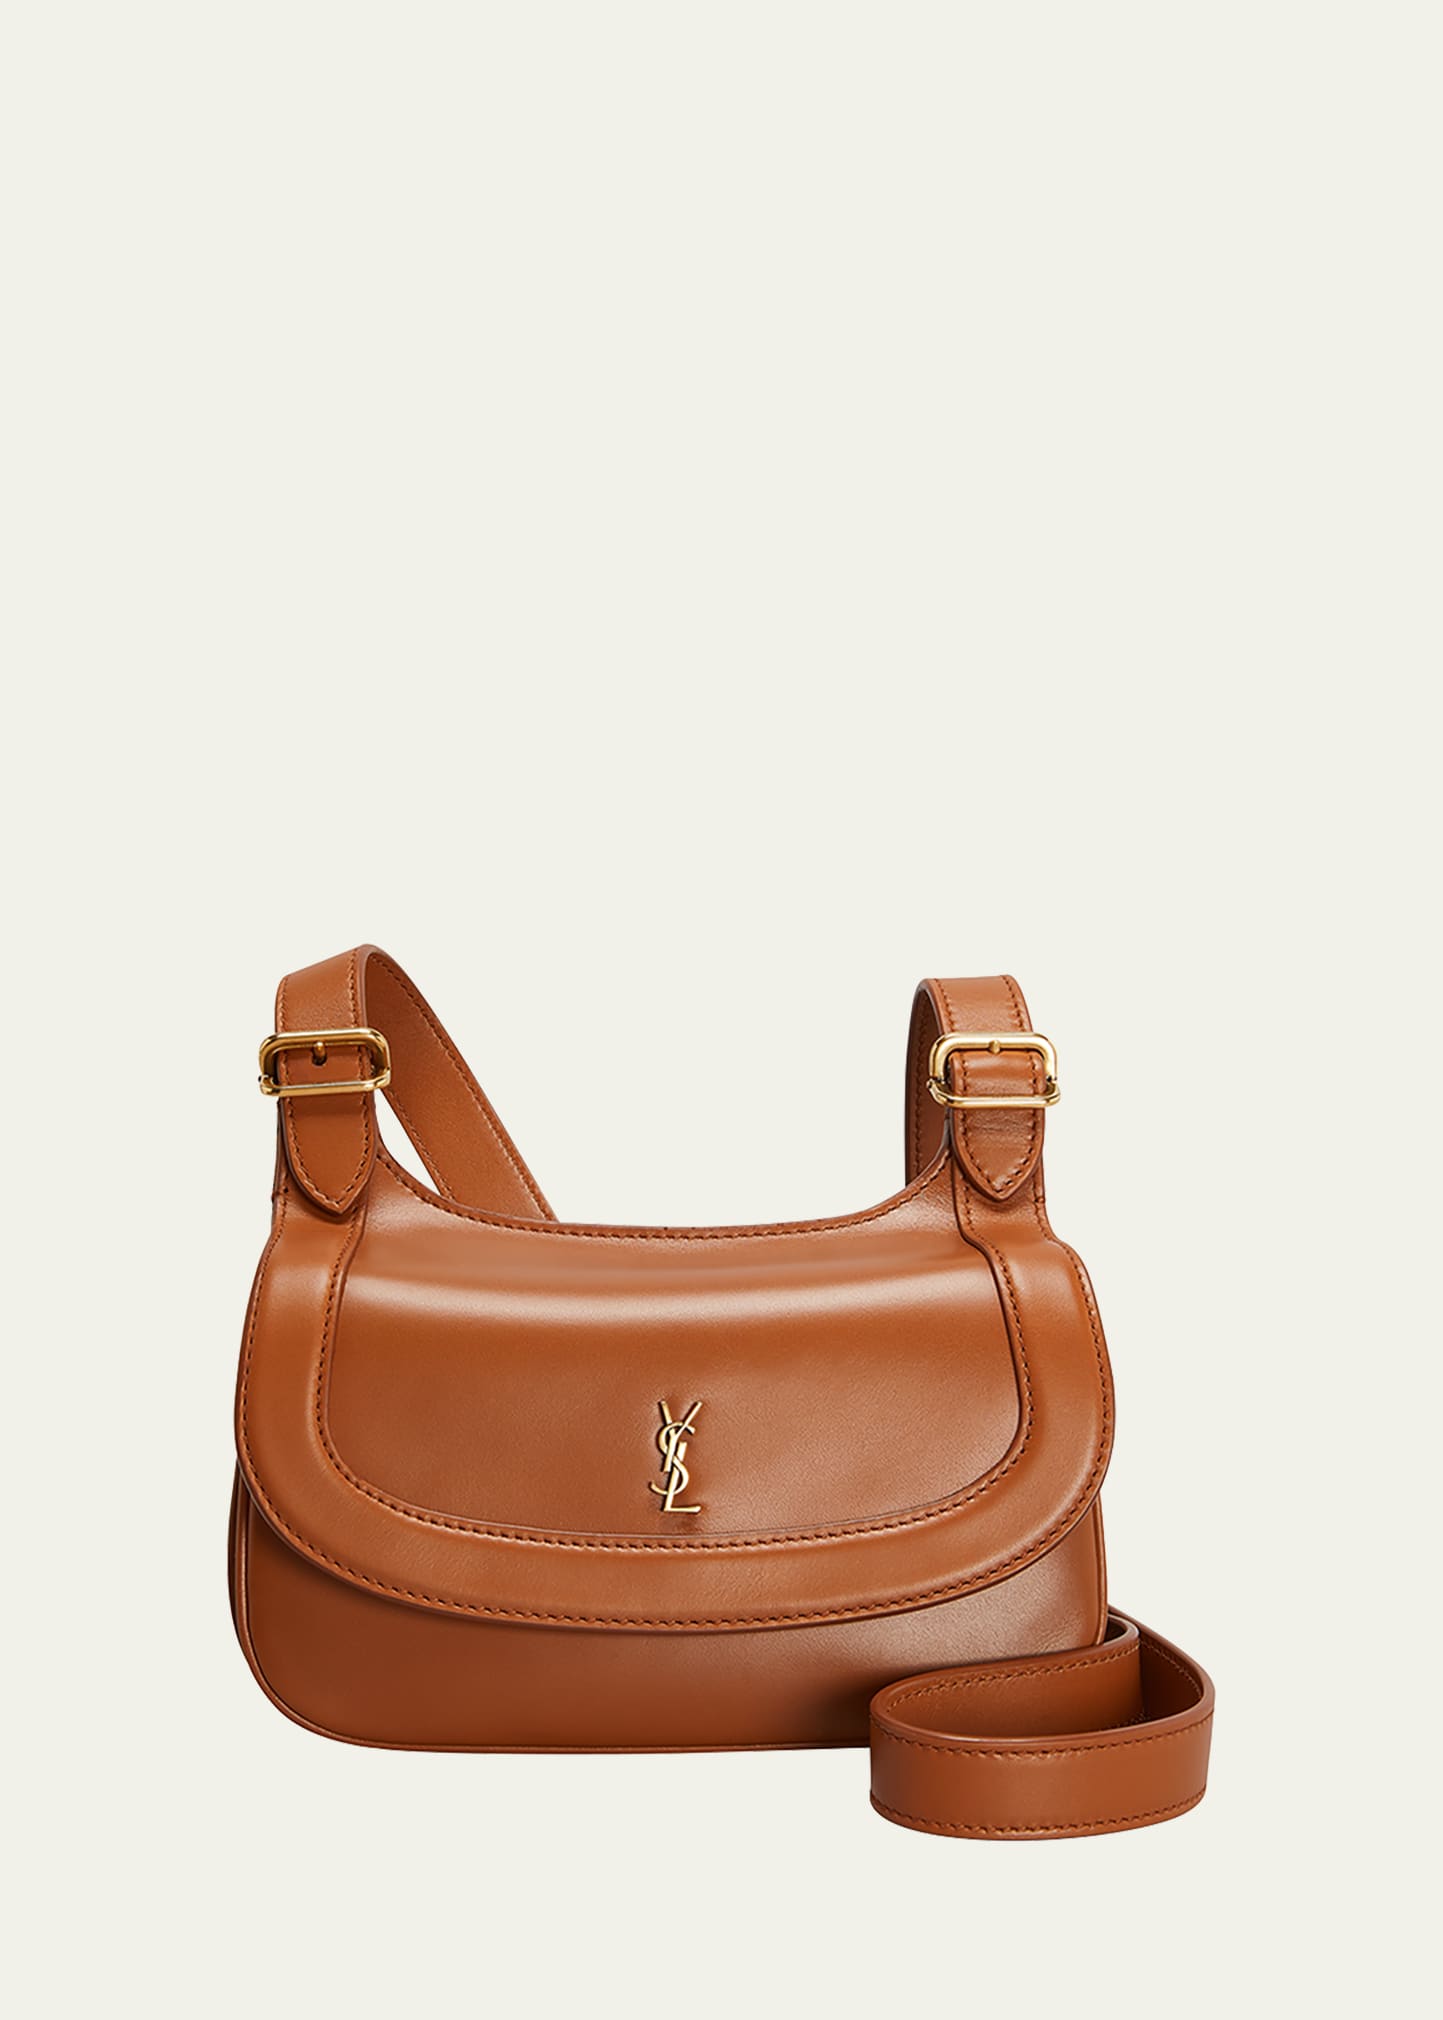 Saint Laurent Charlie Small Leather Shoulder Bag